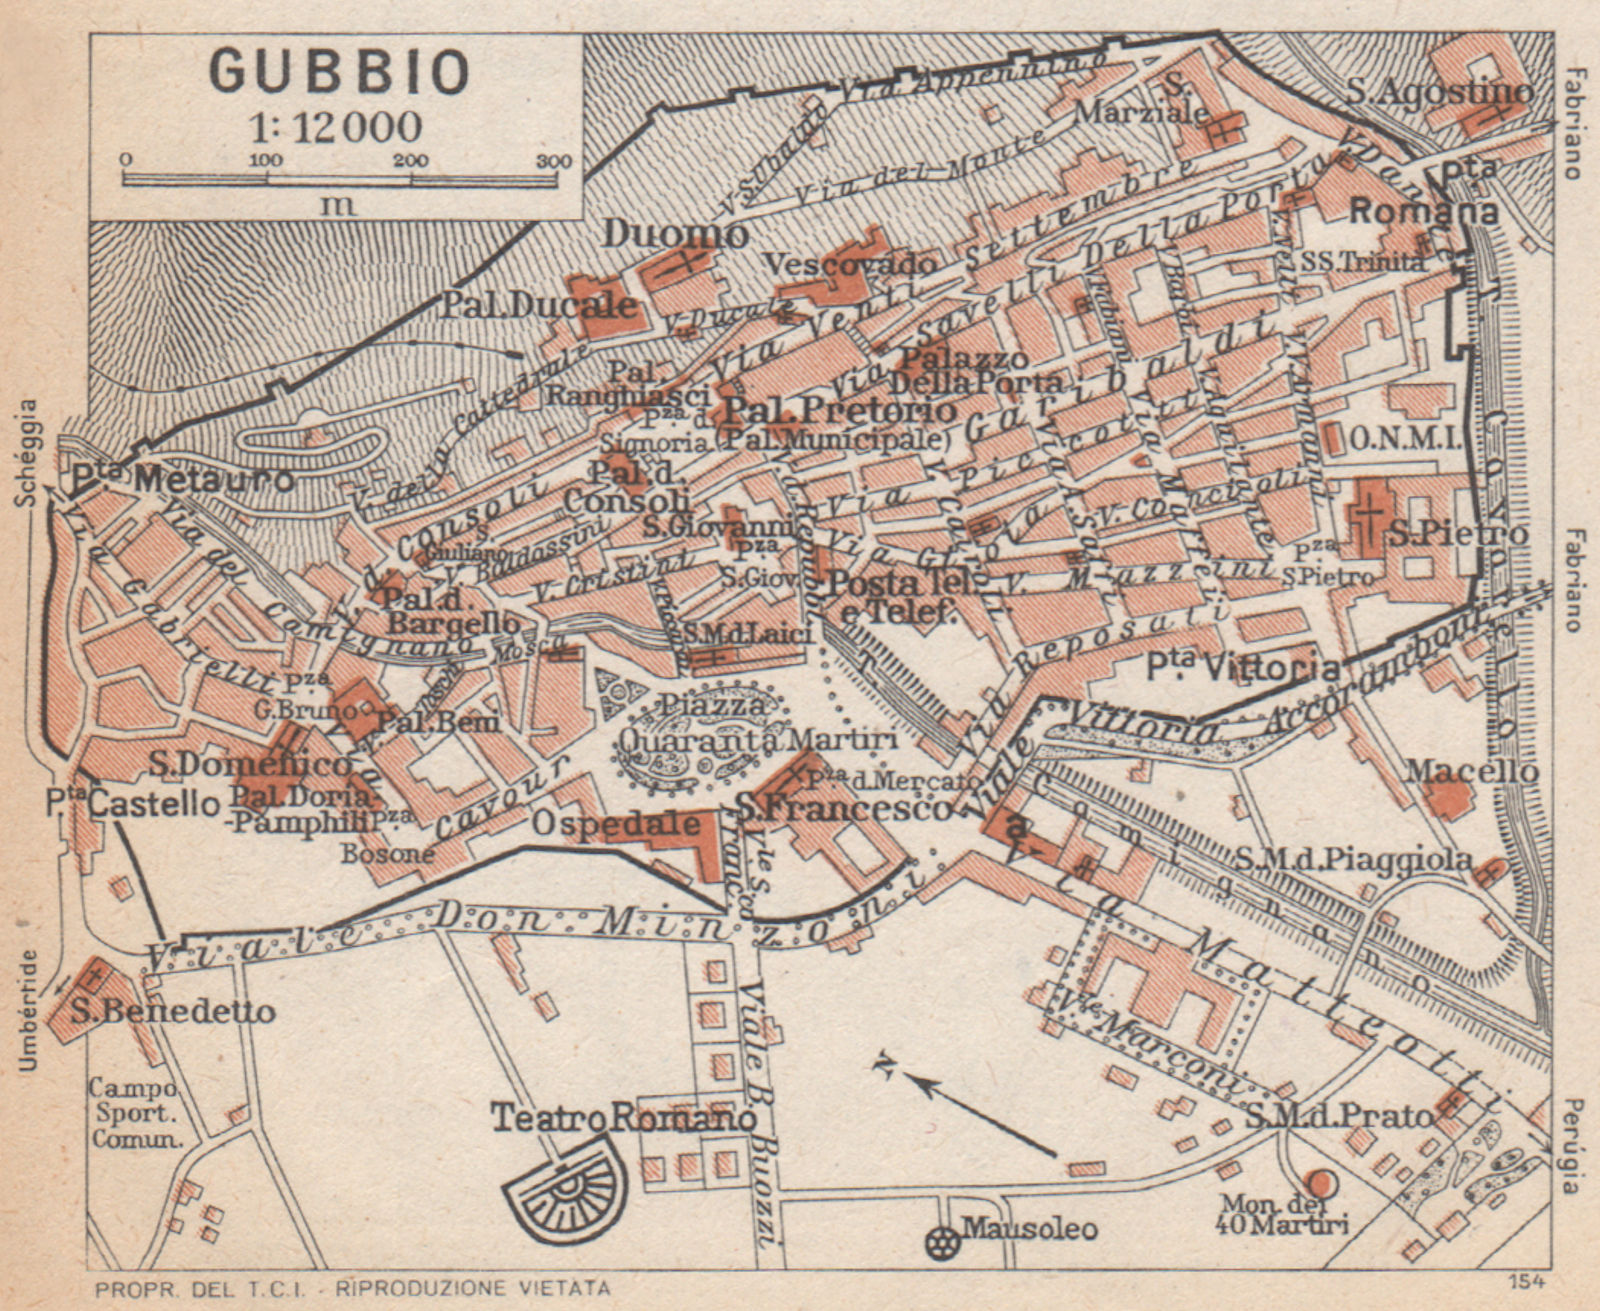 Associate Product GUBBIO vintage town city pianta della città. Italy 1958 old vintage map chart